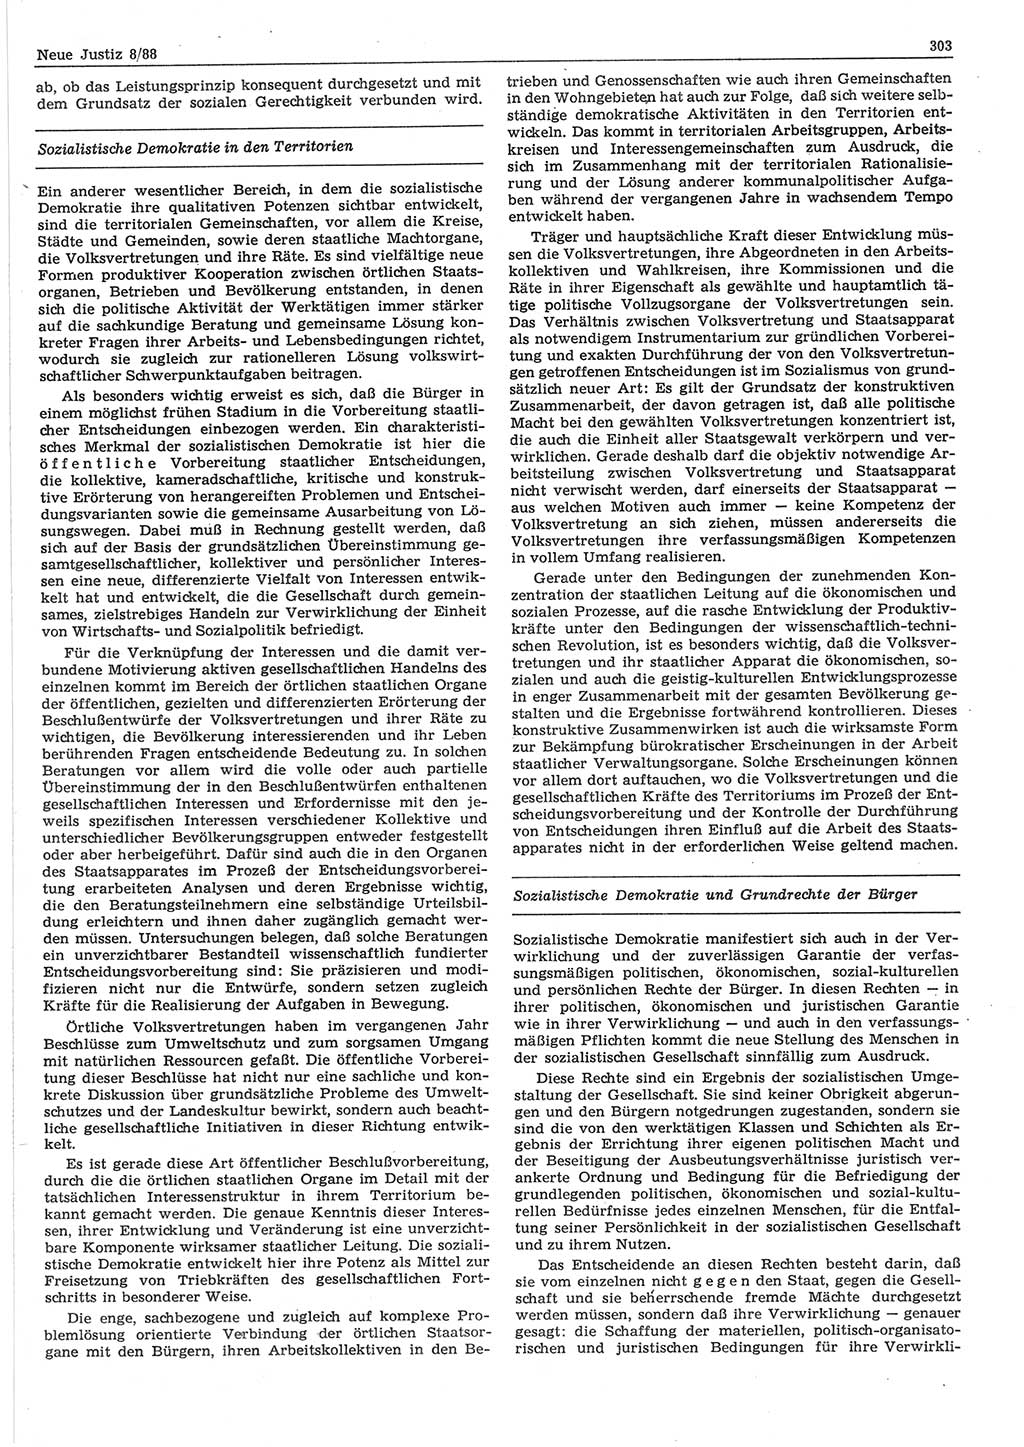 Neue Justiz (NJ), Zeitschrift für sozialistisches Recht und Gesetzlichkeit [Deutsche Demokratische Republik (DDR)], 42. Jahrgang 1988, Seite 303 (NJ DDR 1988, S. 303)